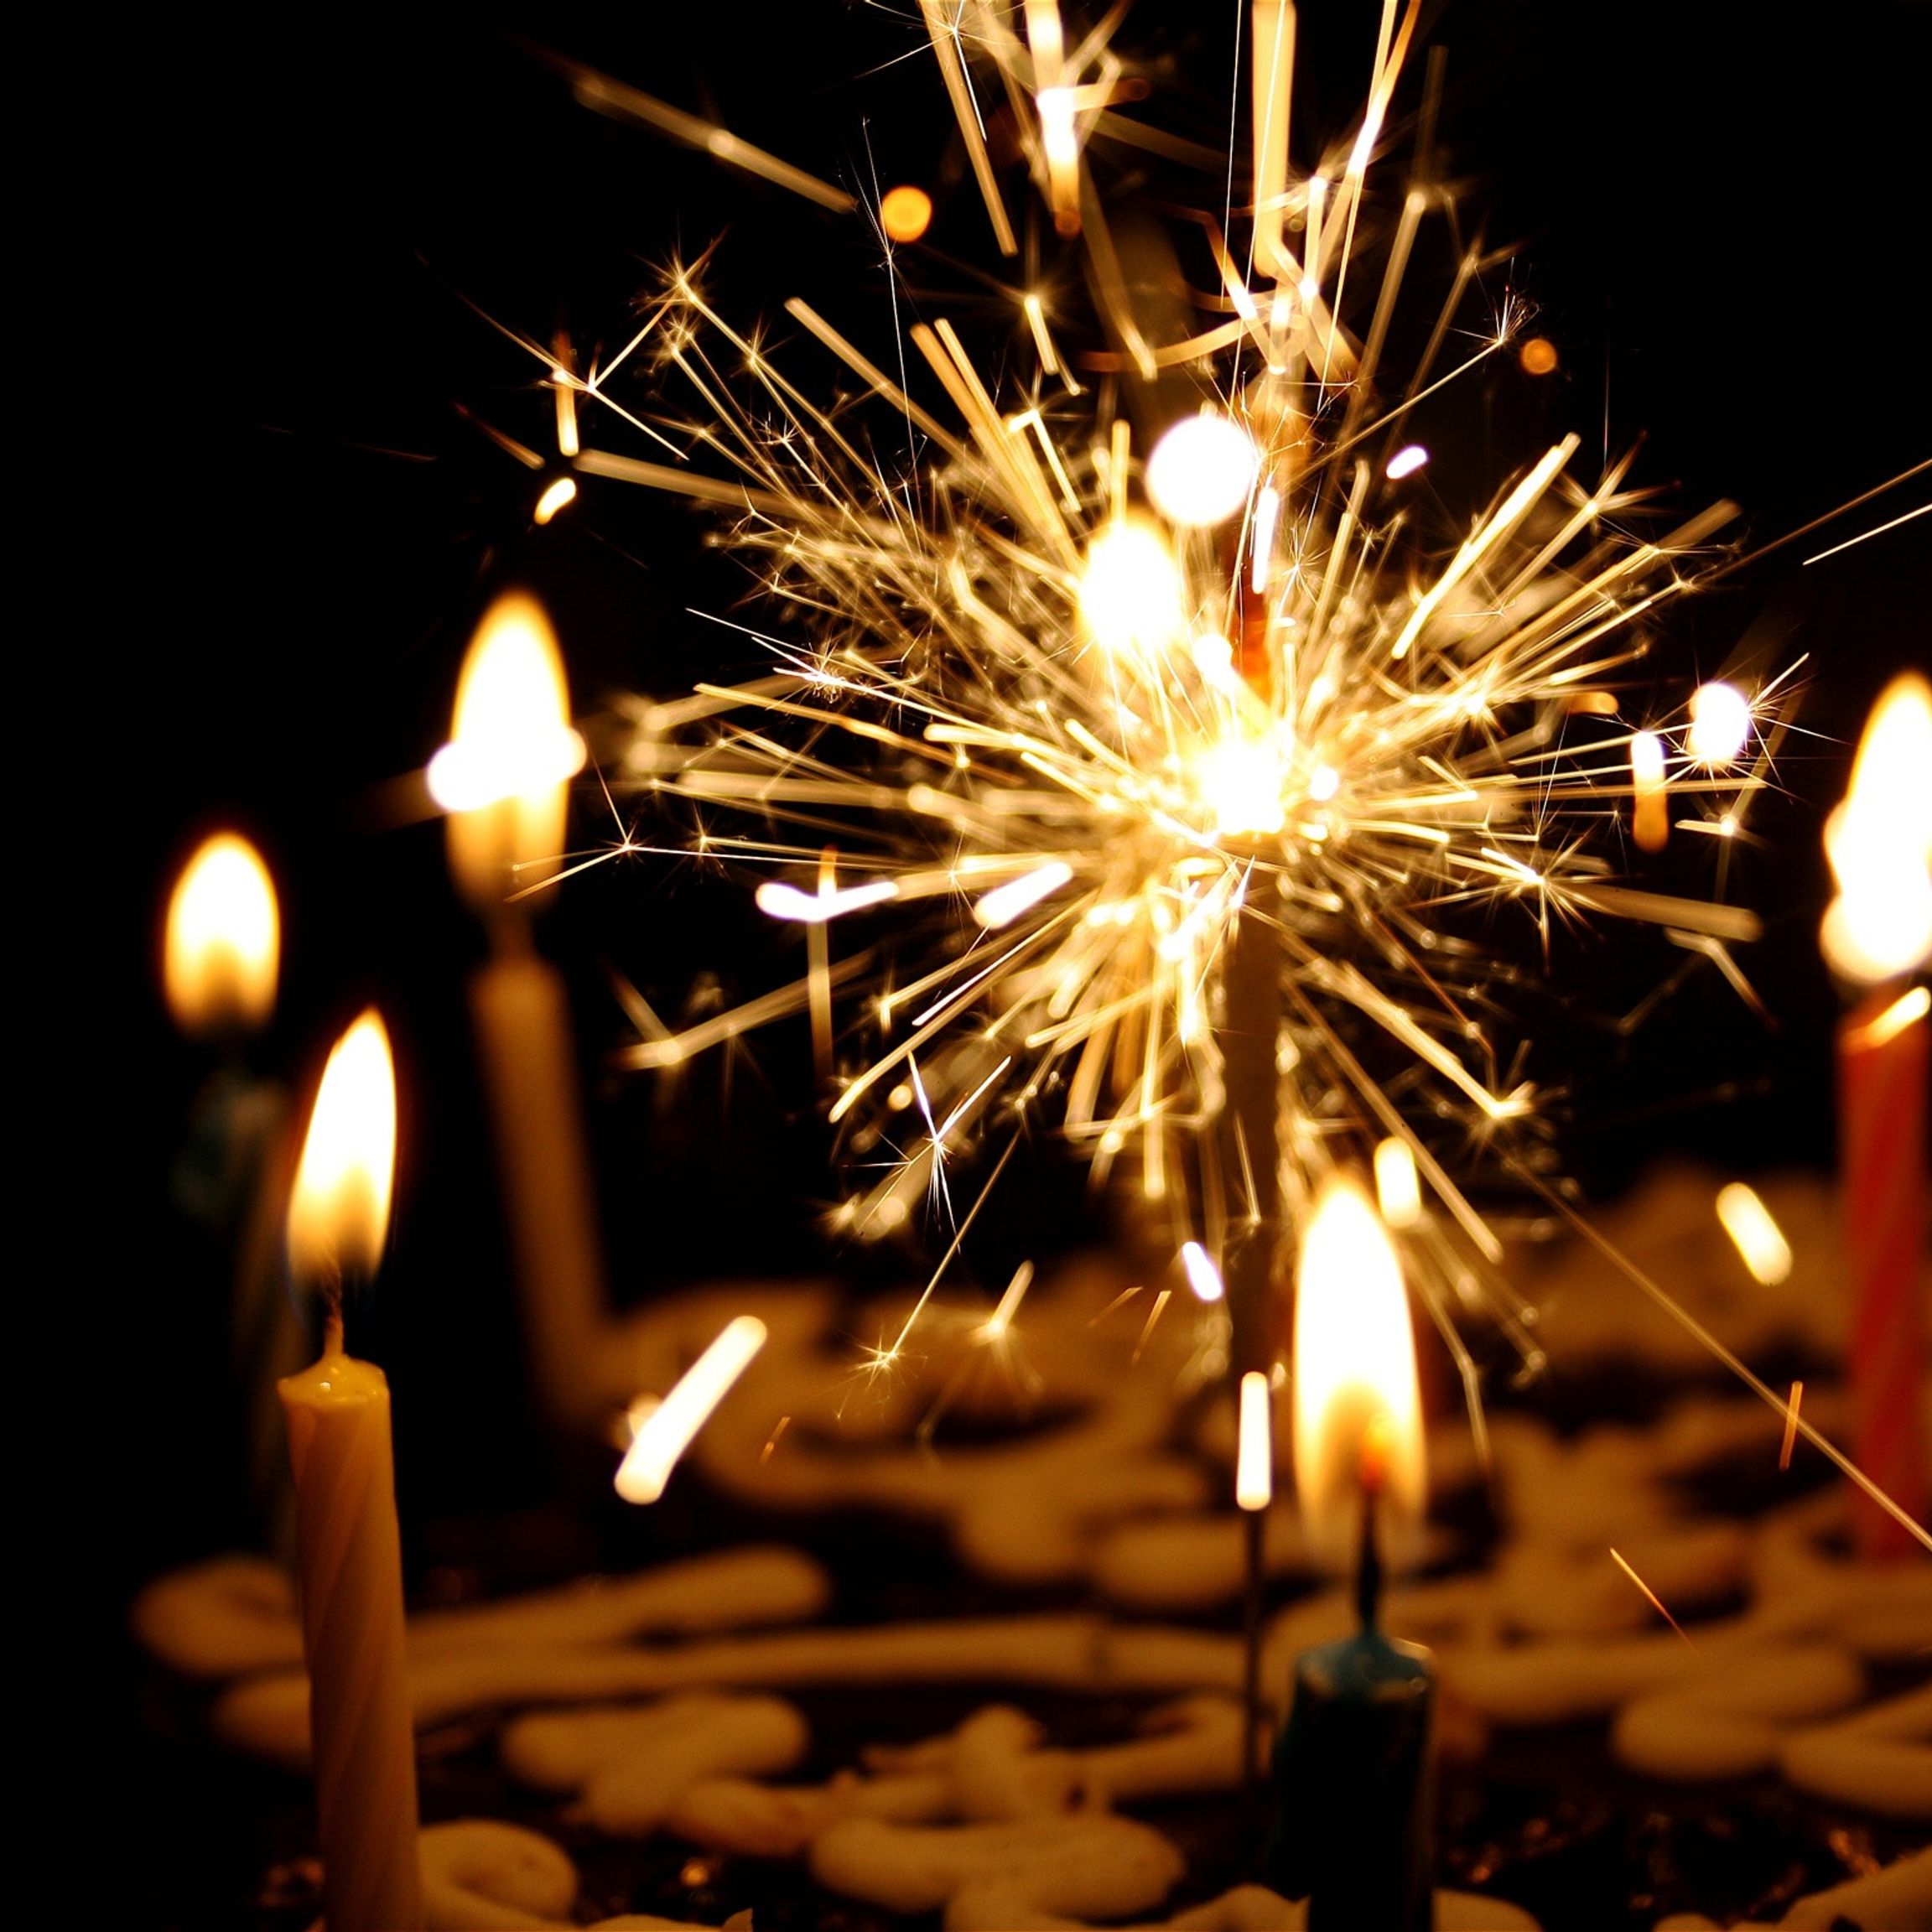 Des bougies originales pour vos gâteaux d'anniversaire !